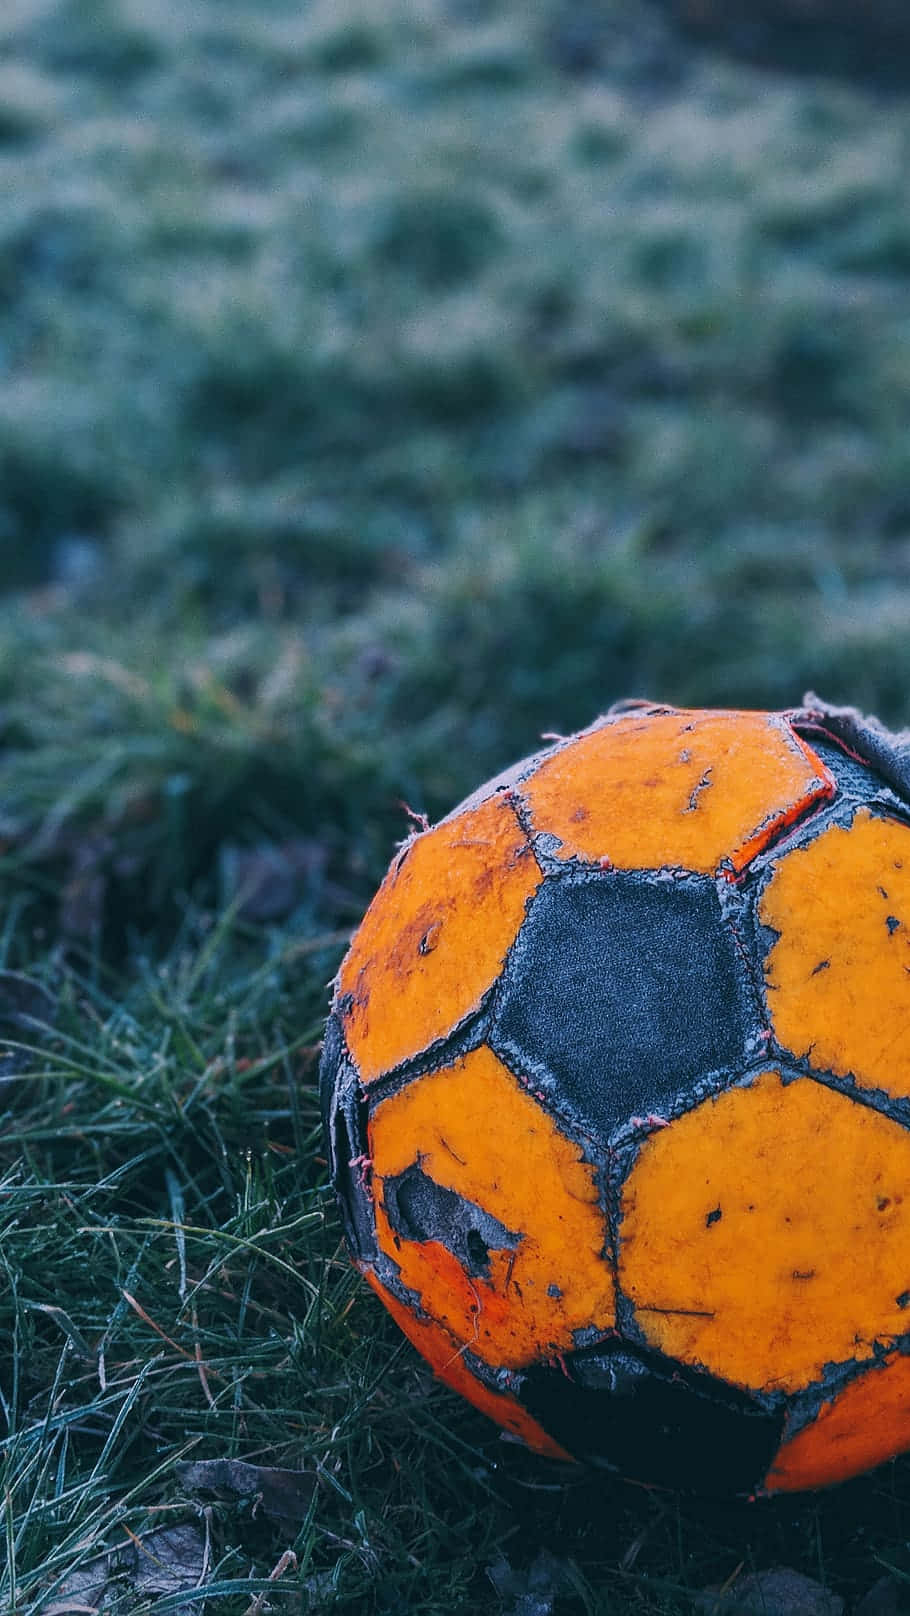 En orange fodbold siddende på græsset